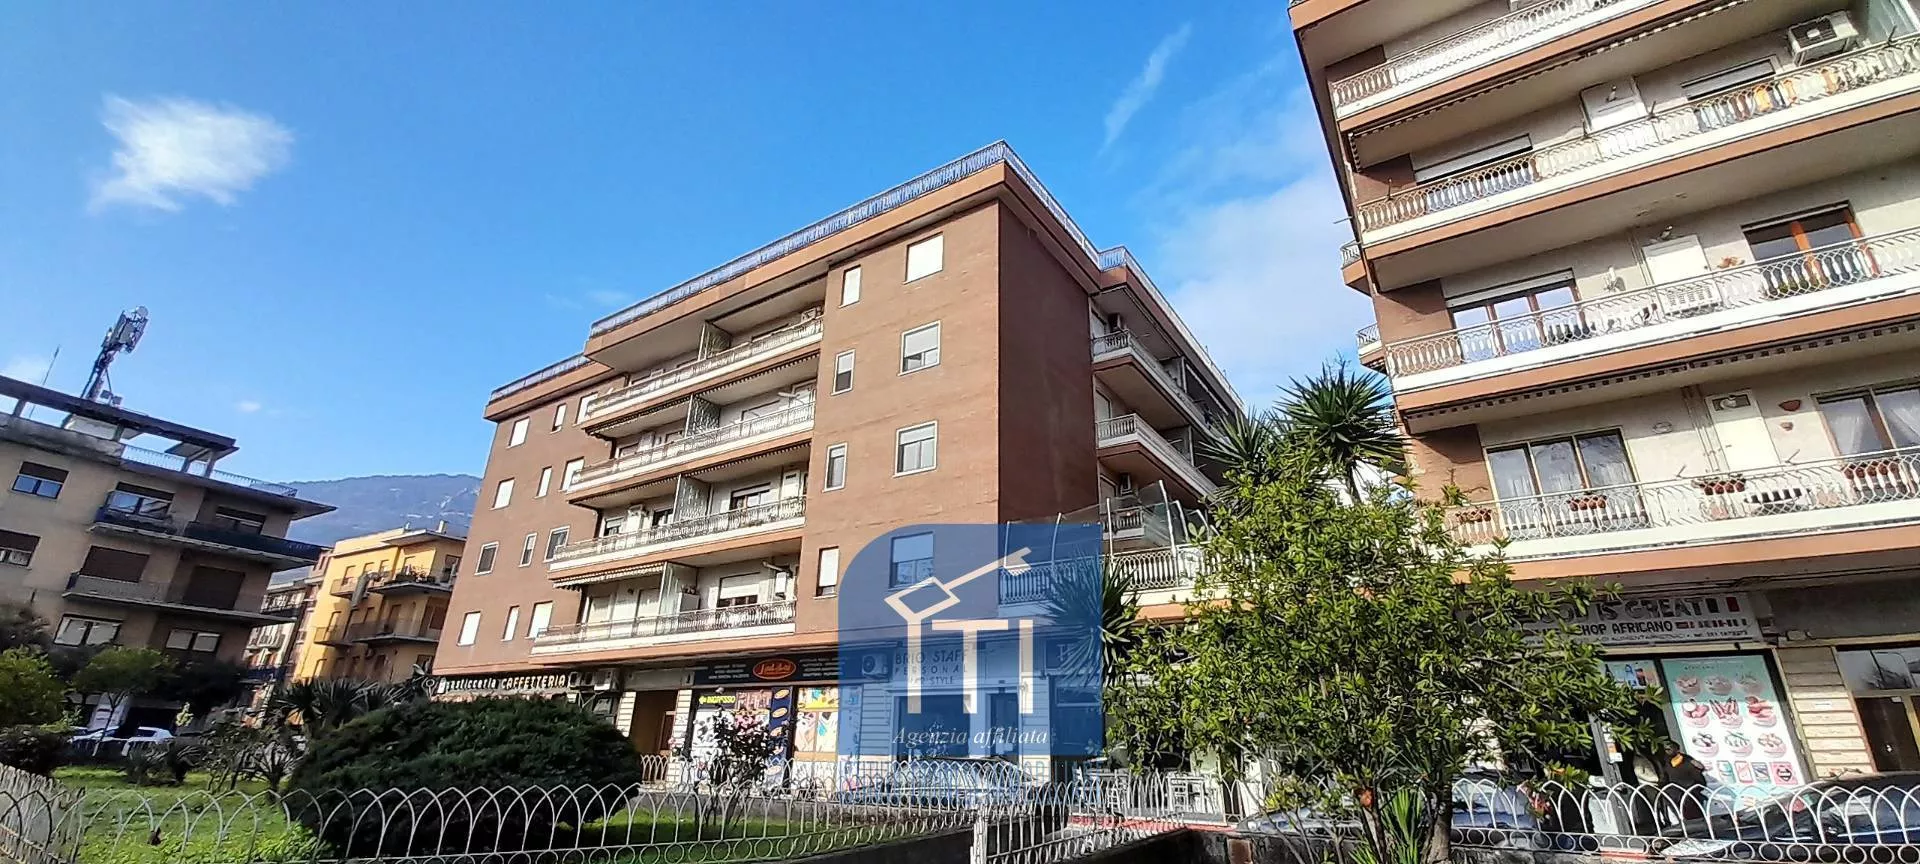 Immagine per Appartamento in vendita a Cassino PIAZZA GARIBALDI